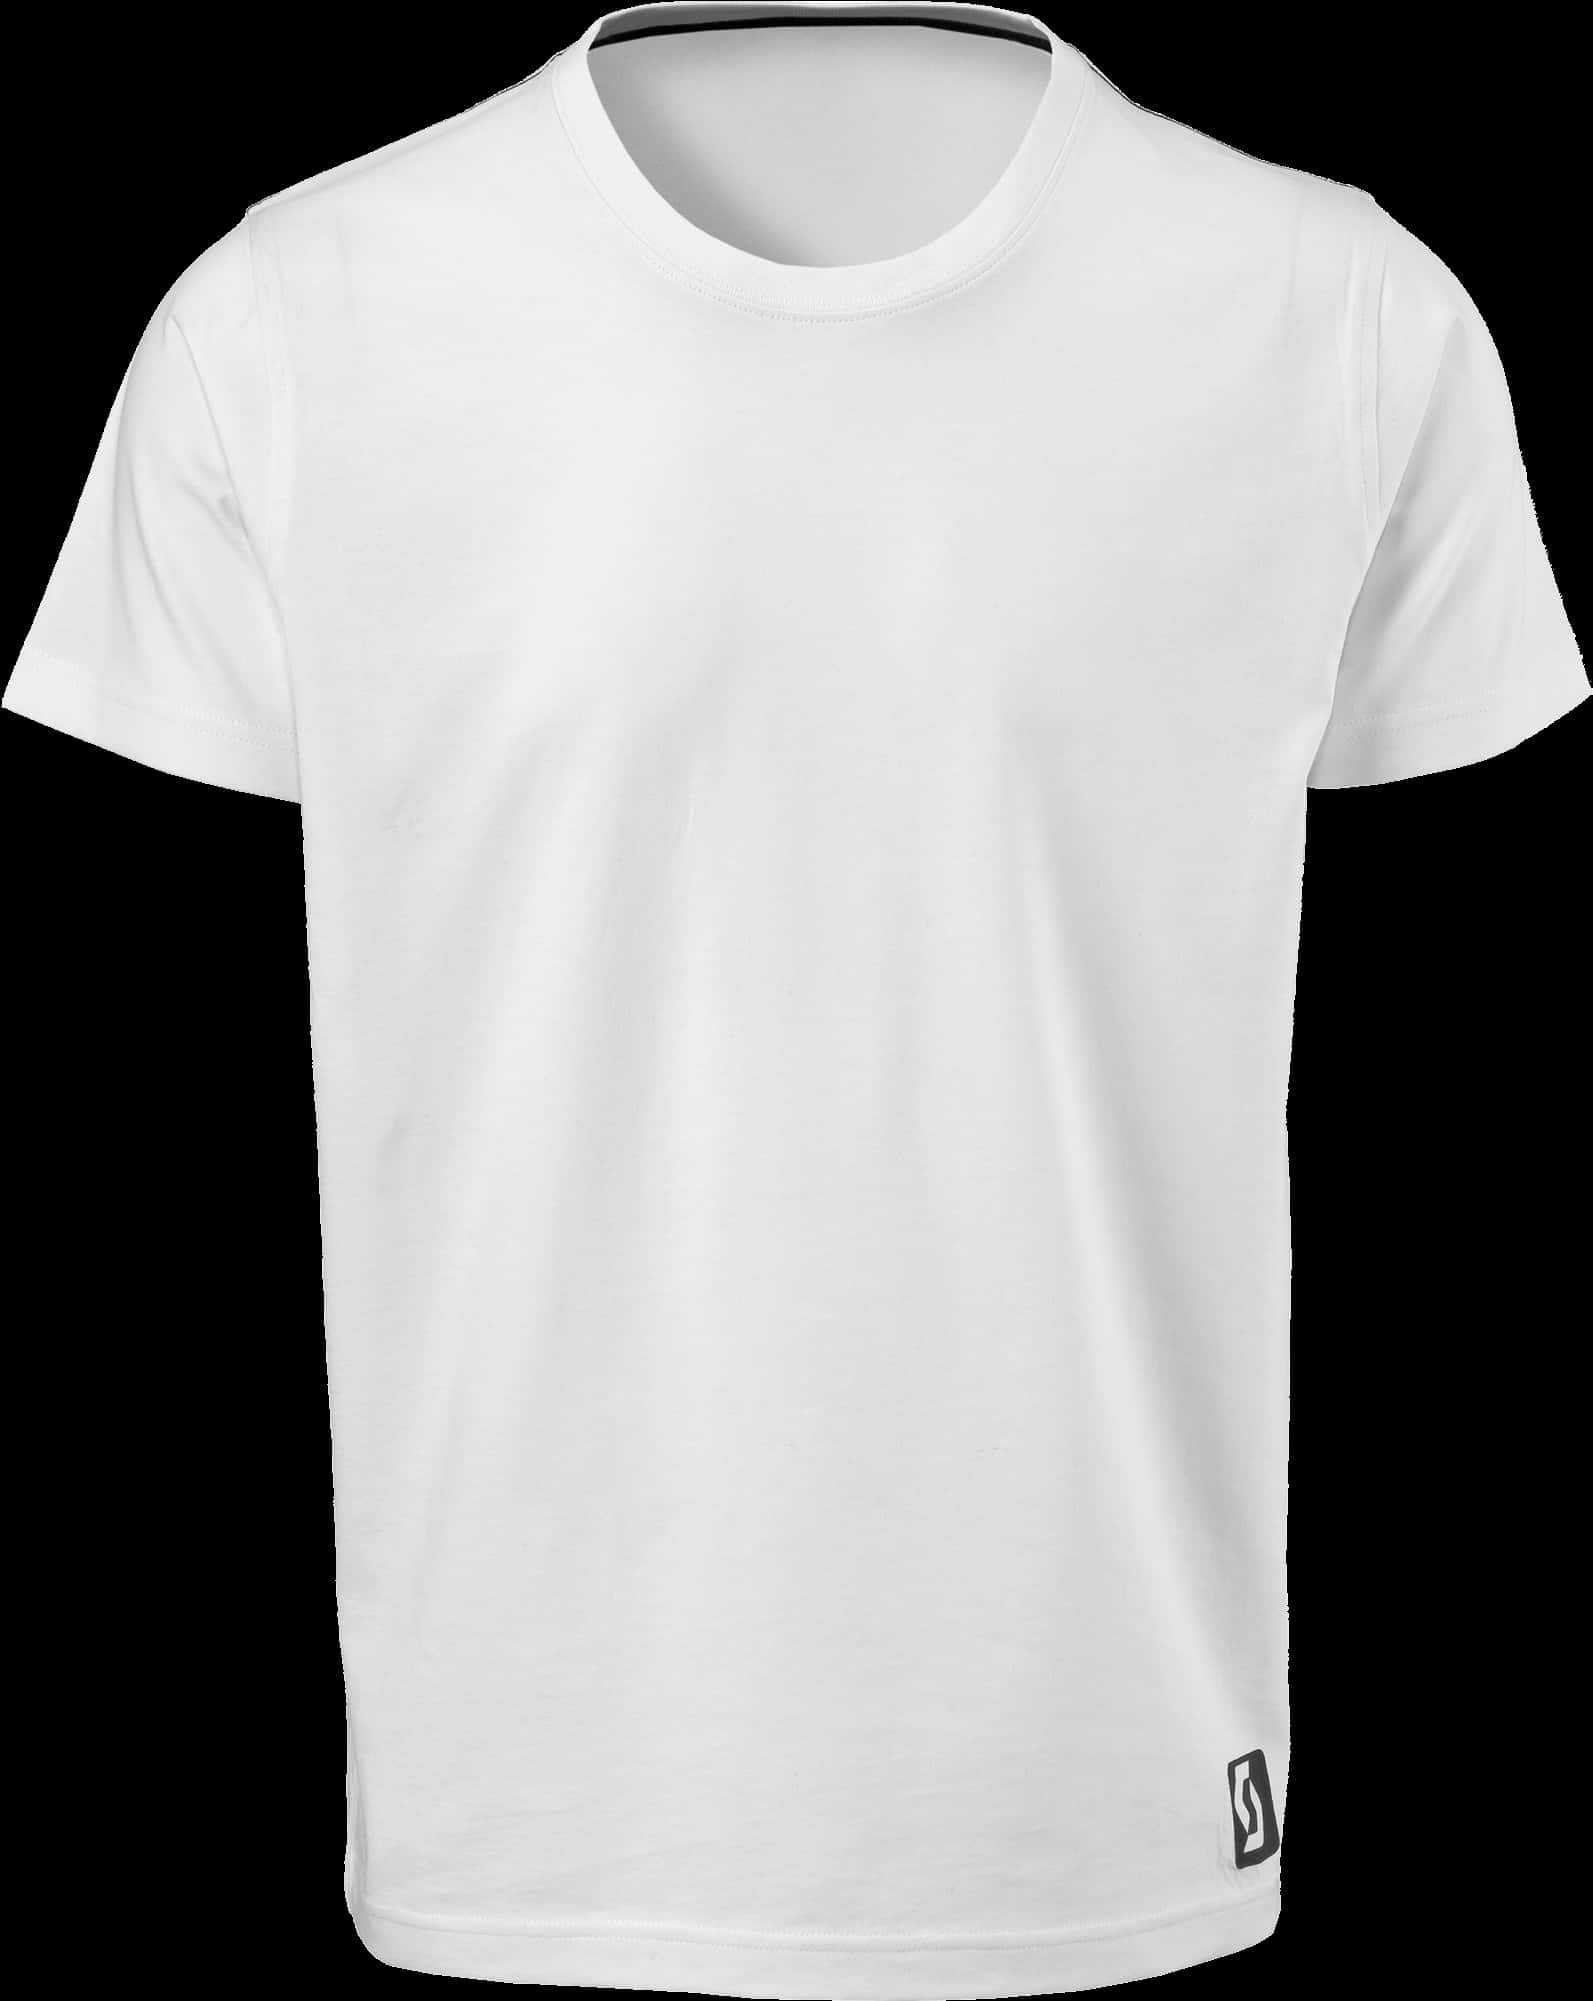 Plain White T Shirt Mockup PNG